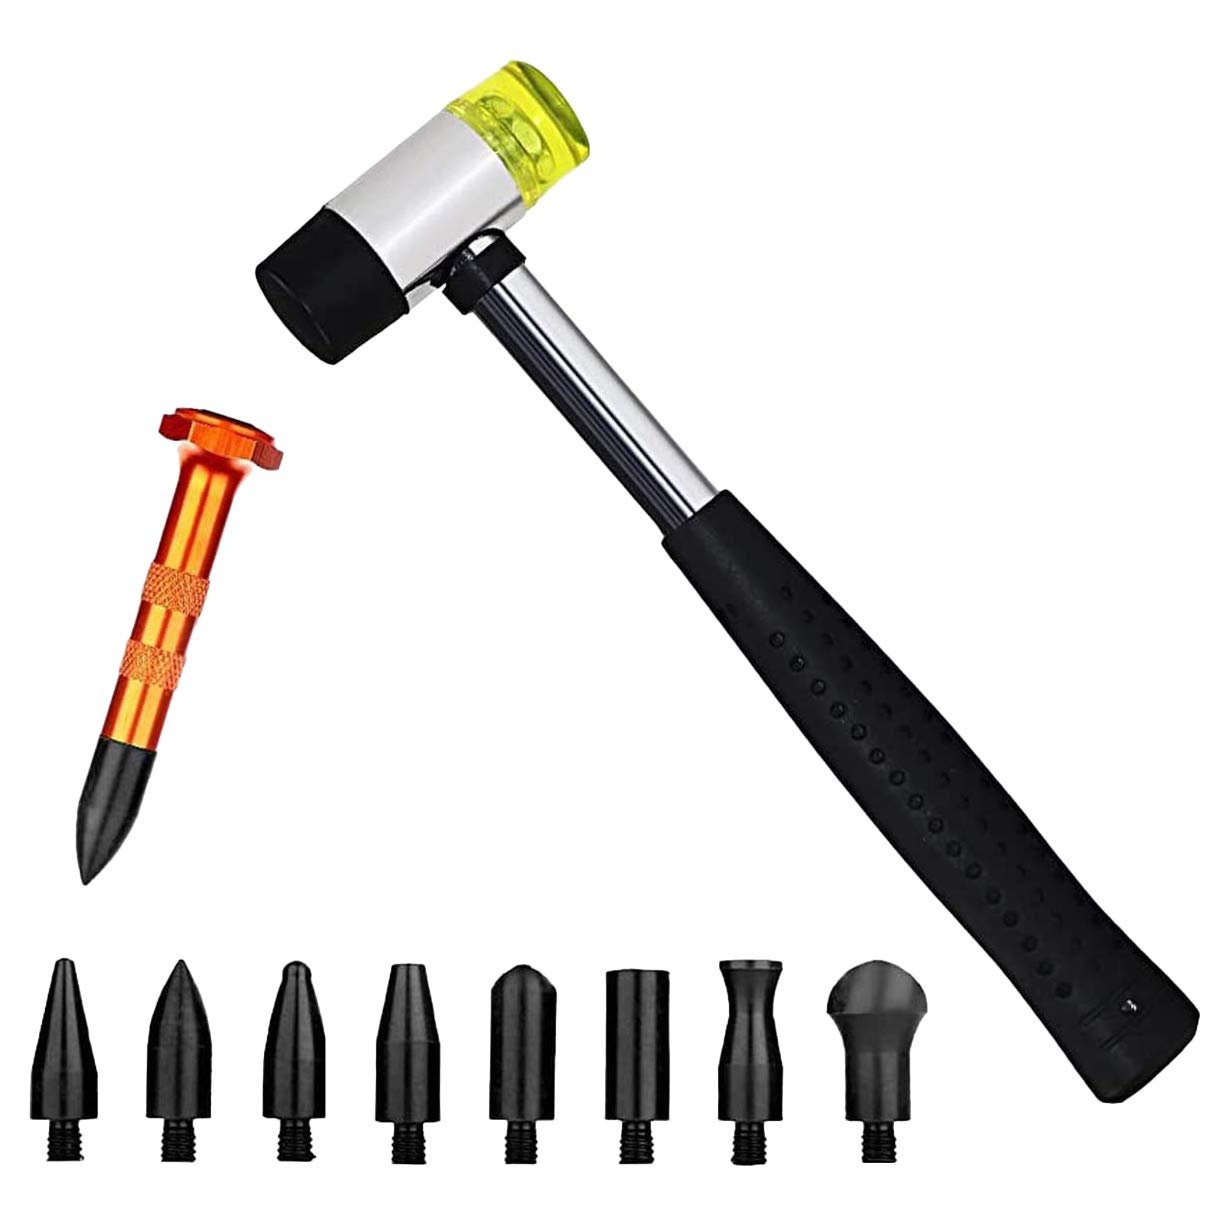 Cookwowe Karosserie Dellen Reparatur Werkzeug Set - 10-teilig mit lackierbaren Werkzeugen, Gummihammer, Knock-Down-Kopf und Zapfhahn-Nieder-Werkzeugen für Autoreparatur und mehr von Cookwowe